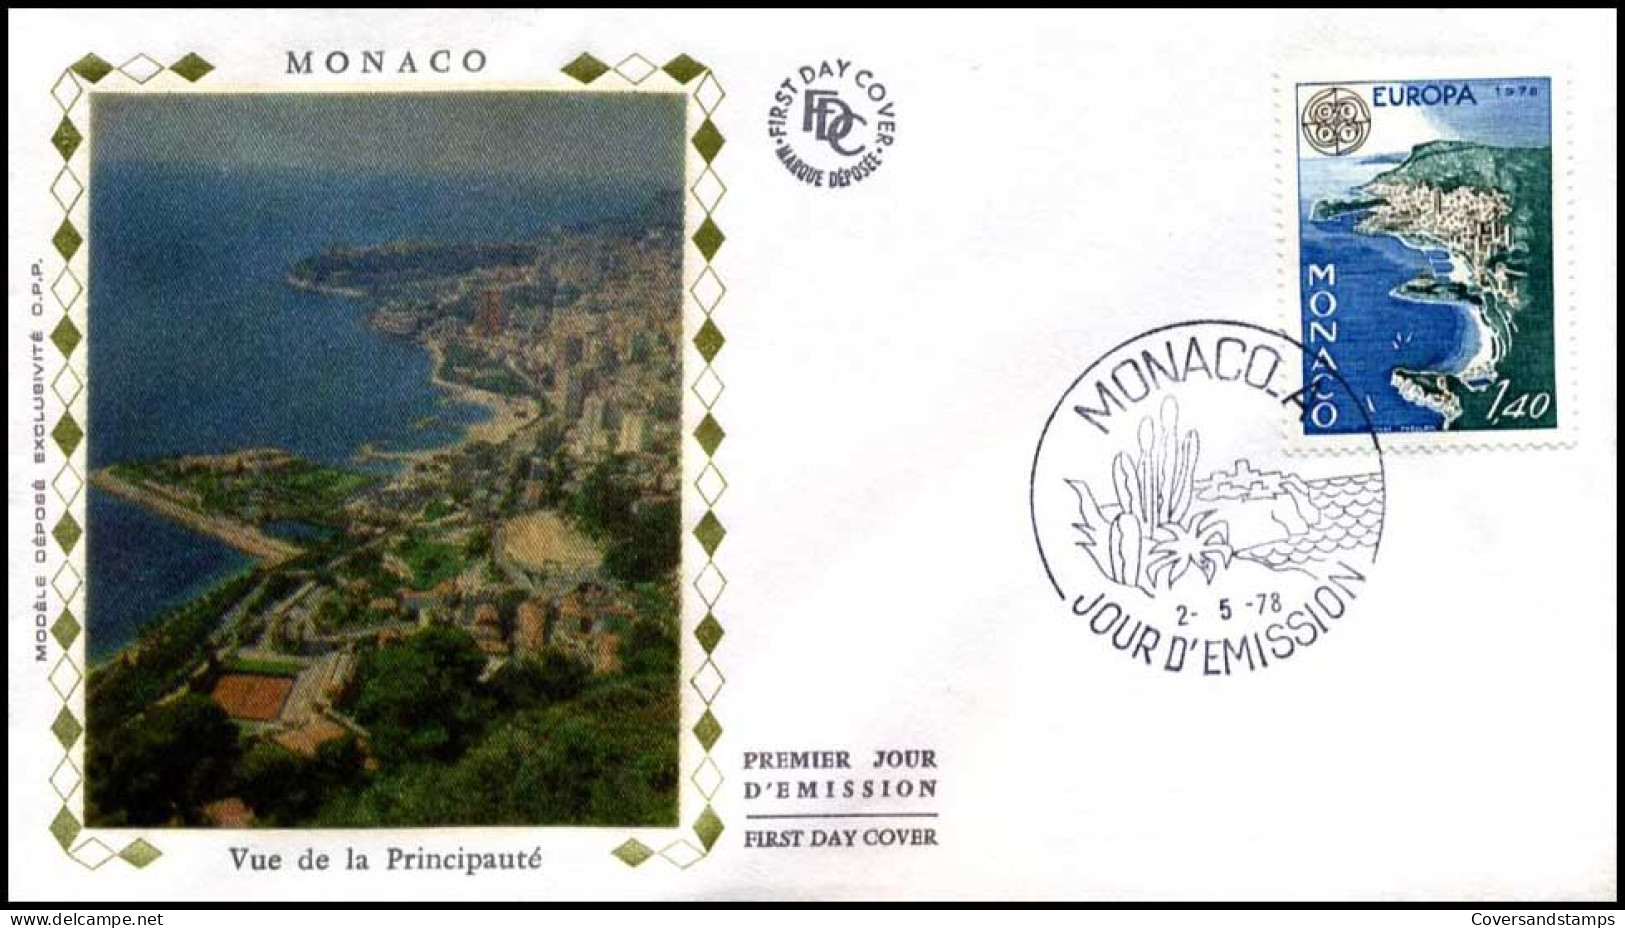  Monaco - FDC - Europa CEPT 1978 - 1978